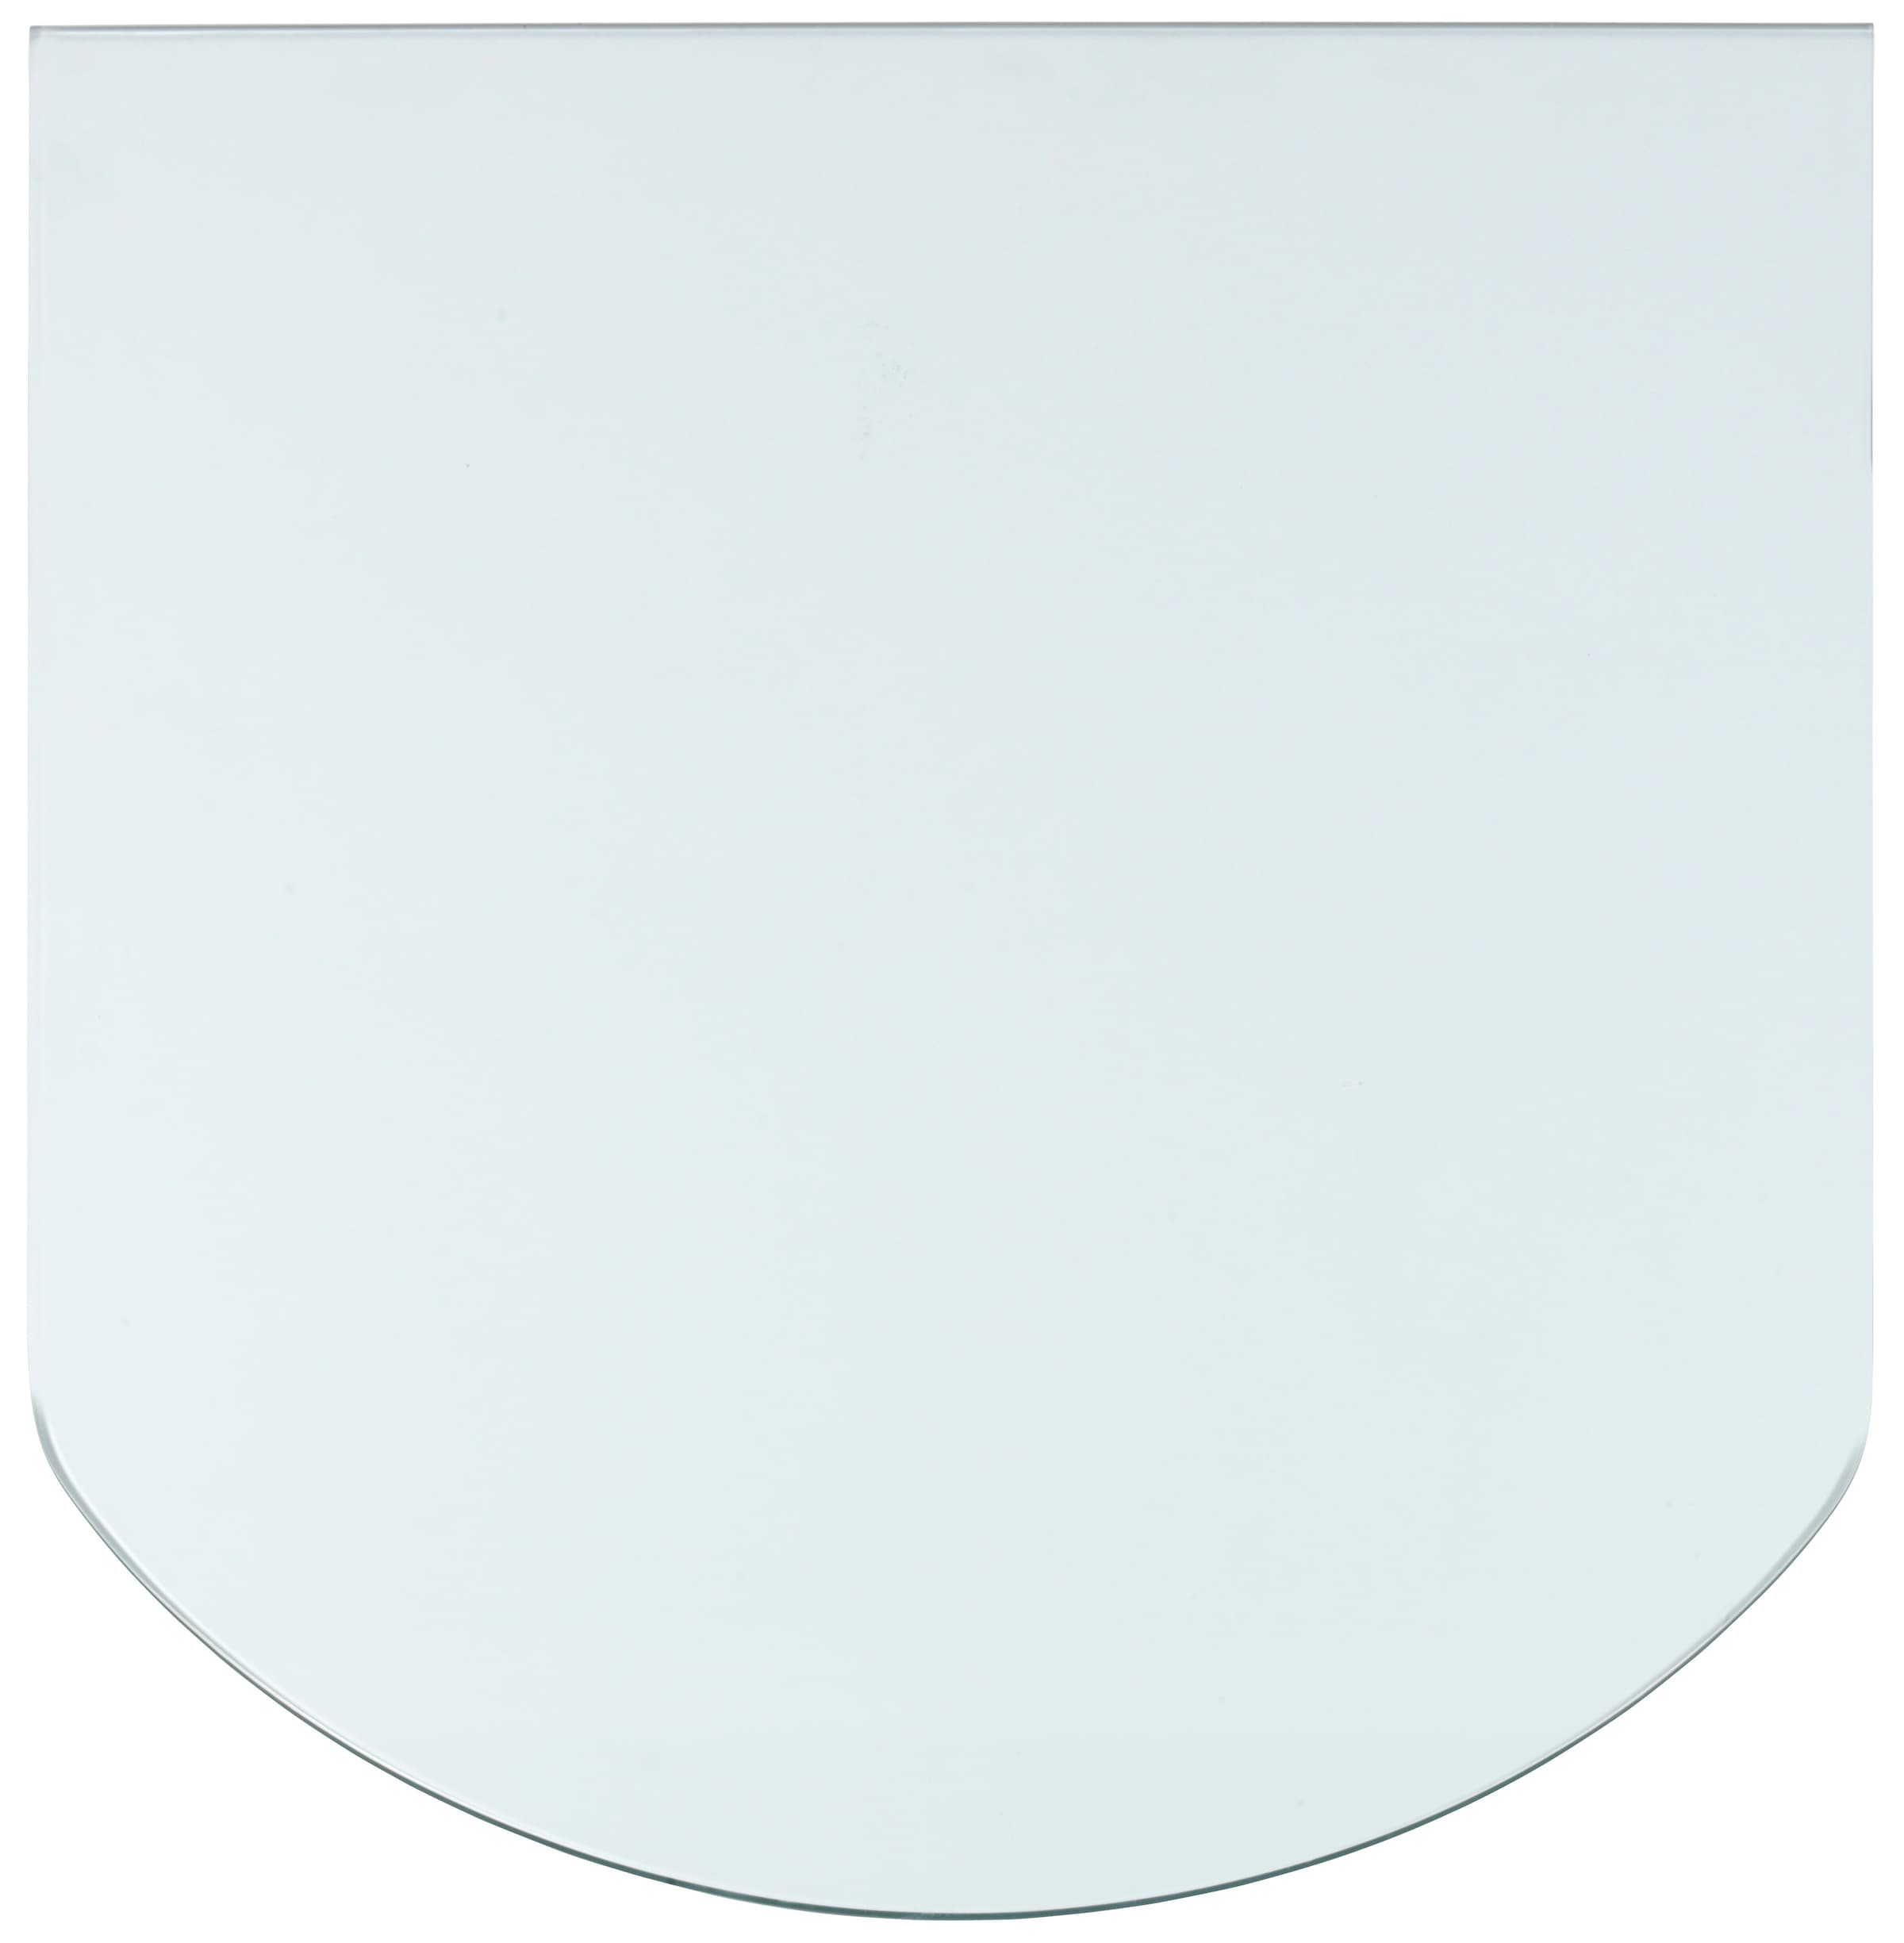 Heathus Bodenschutzplatte, Glas-Halbrund, 85 x 110 cm, 8mm Stärke, transparent, zum Funkenschutz